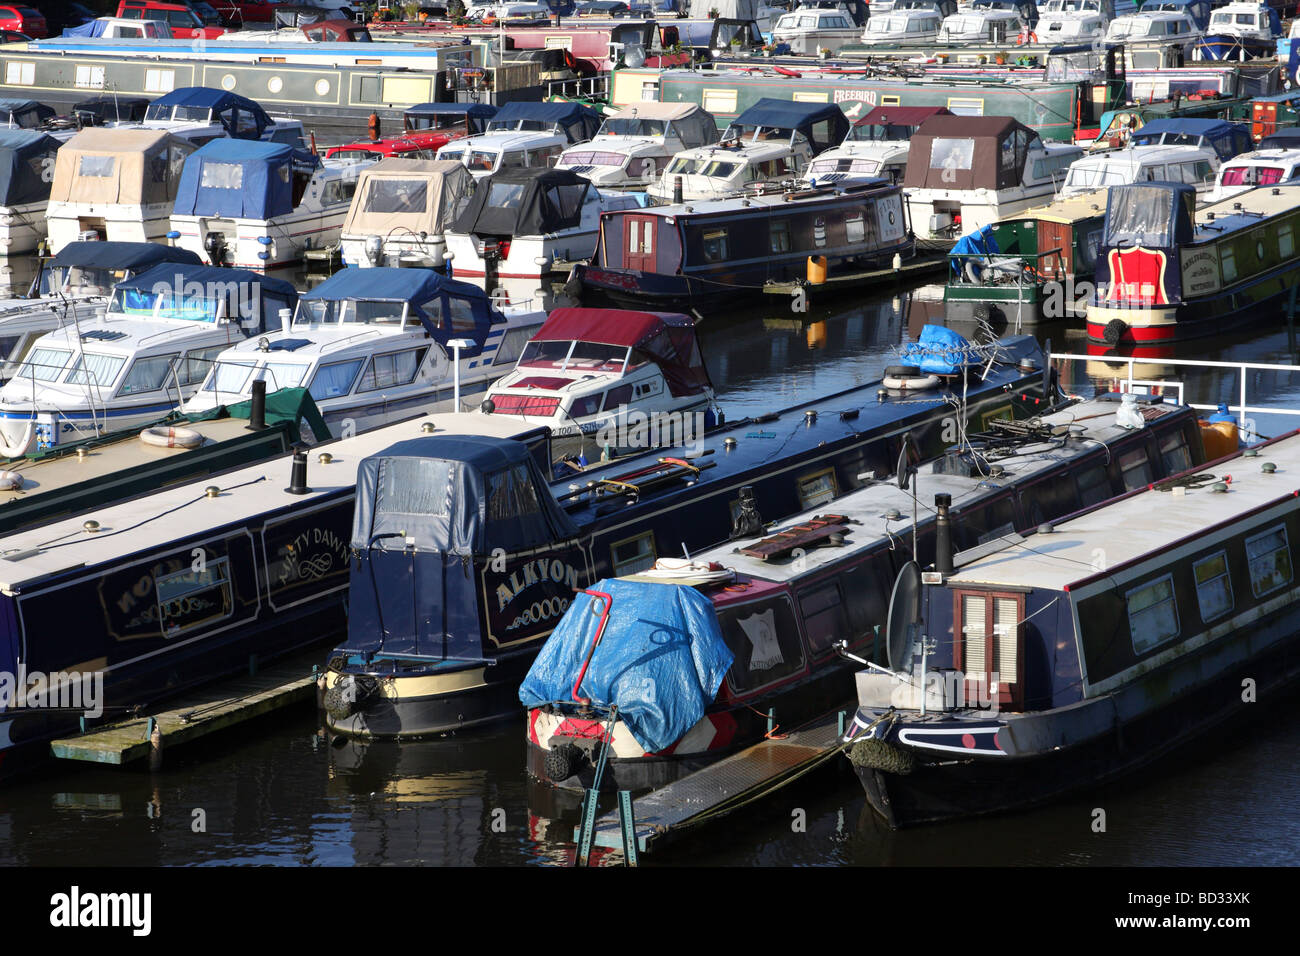 Narrowboats at Castle Marina, Nottingham, England, U.K. Stock Photo